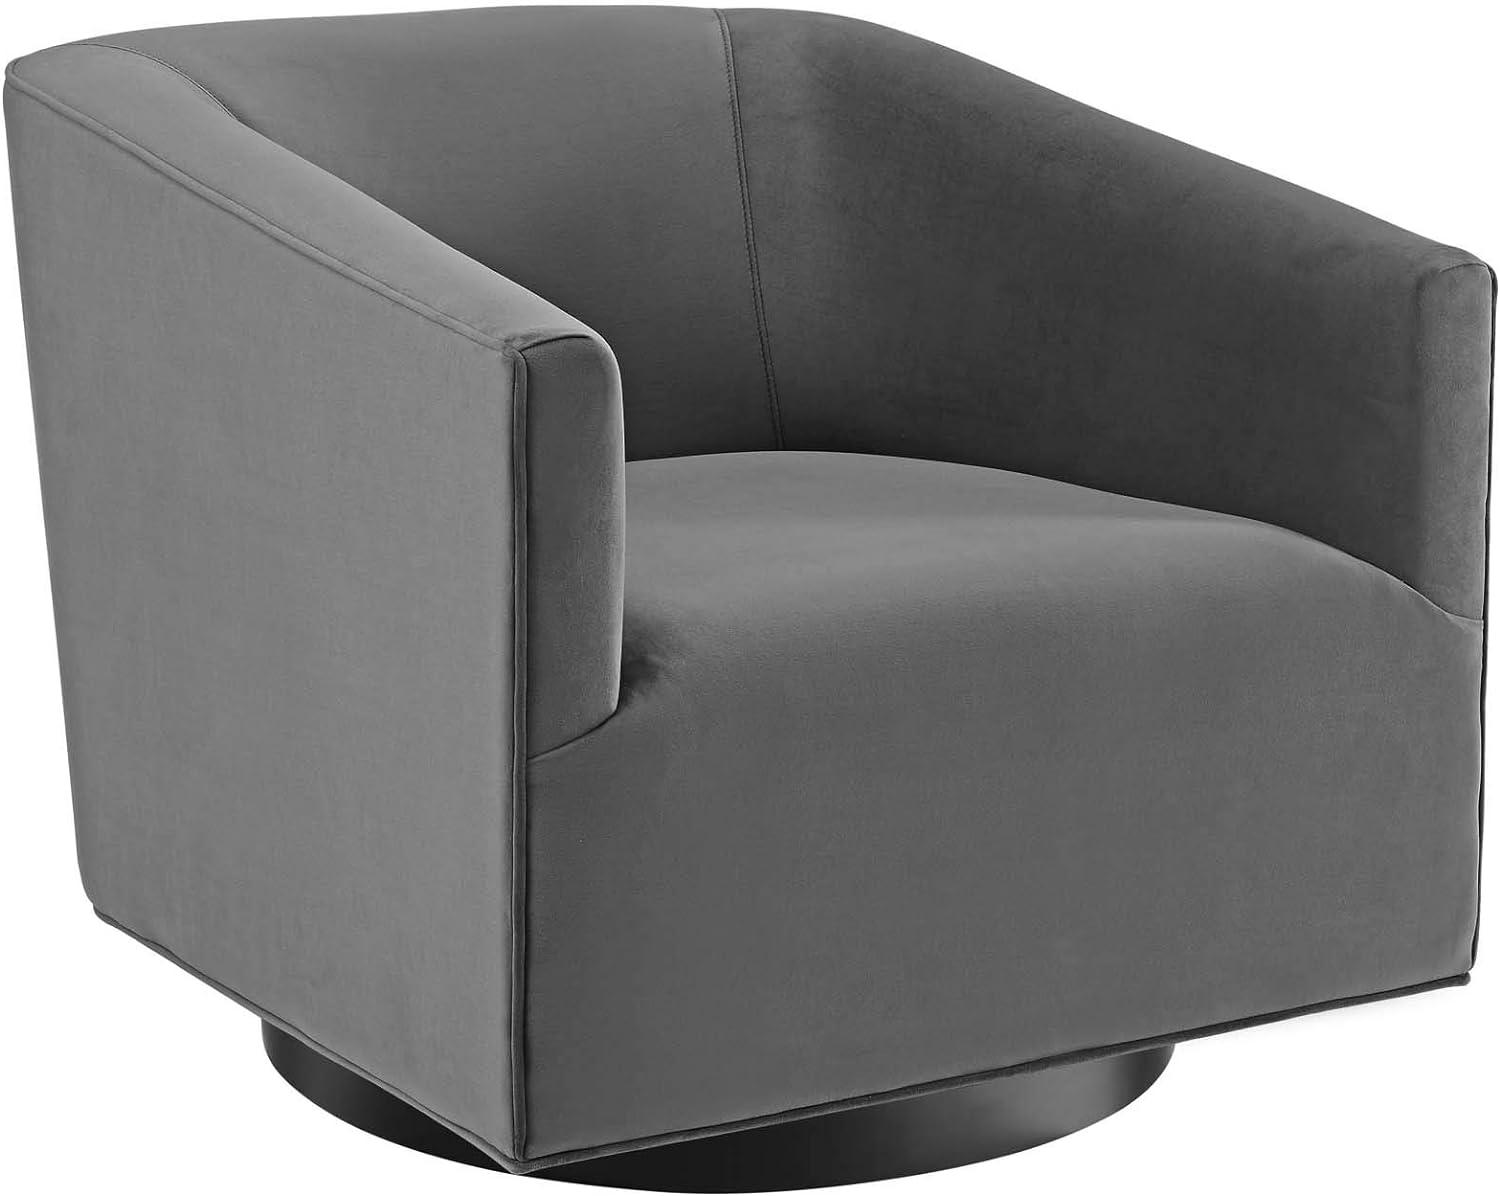 Elegant Gray Velvet Swivel Accent Chair with Metal Base